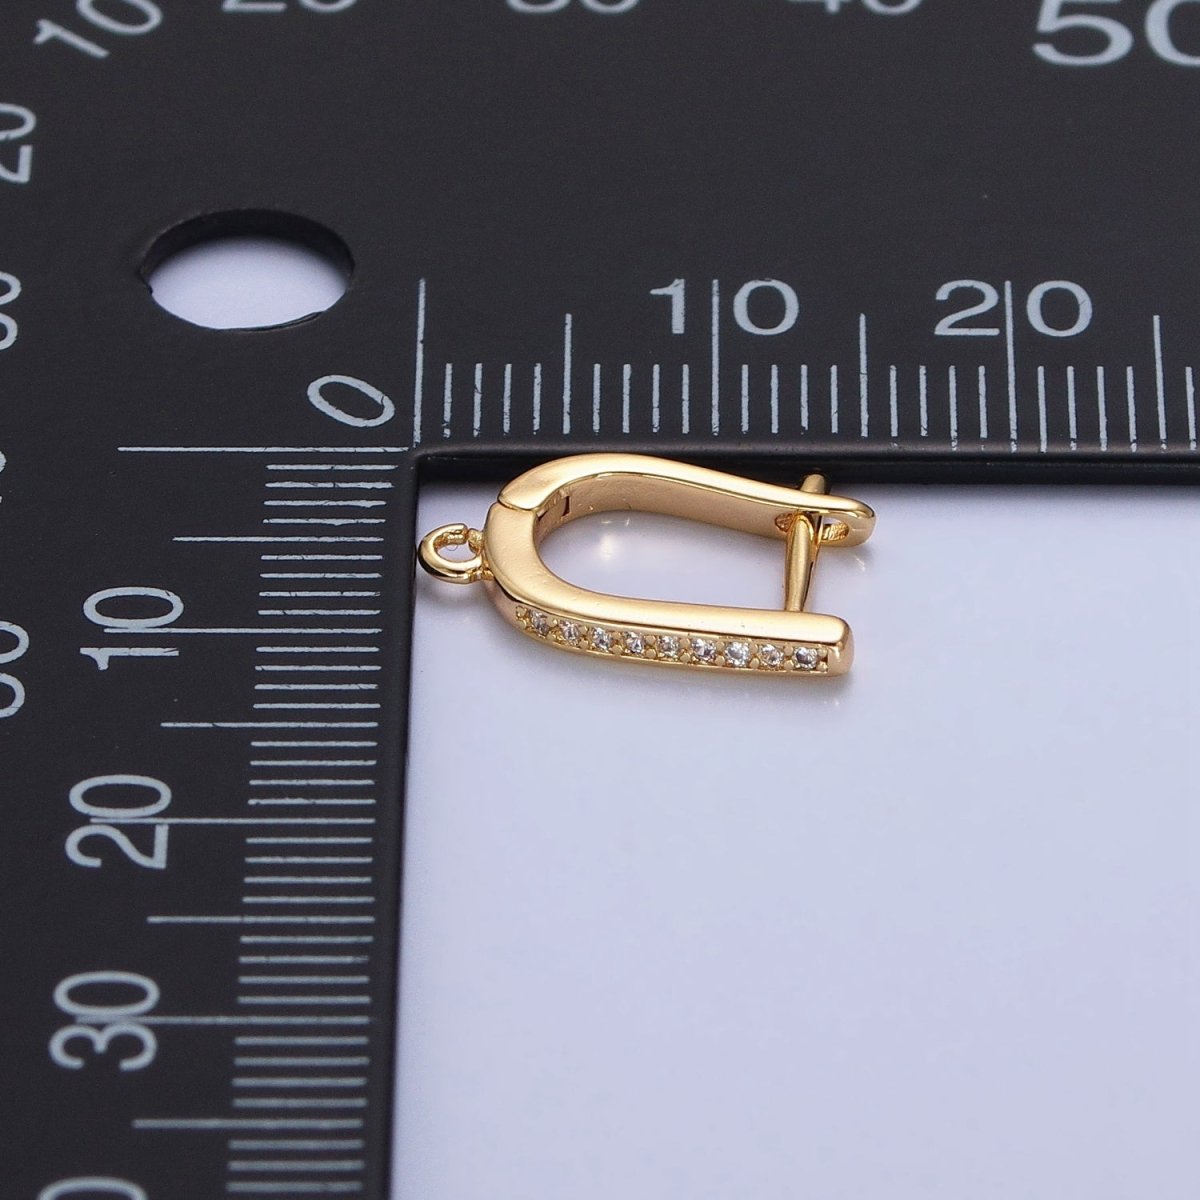 CZ Gold Huggie Earring one touch w/ open link Gold / Silver Earring Lever back earring making Supply Z-160 Z-159 - DLUXCA